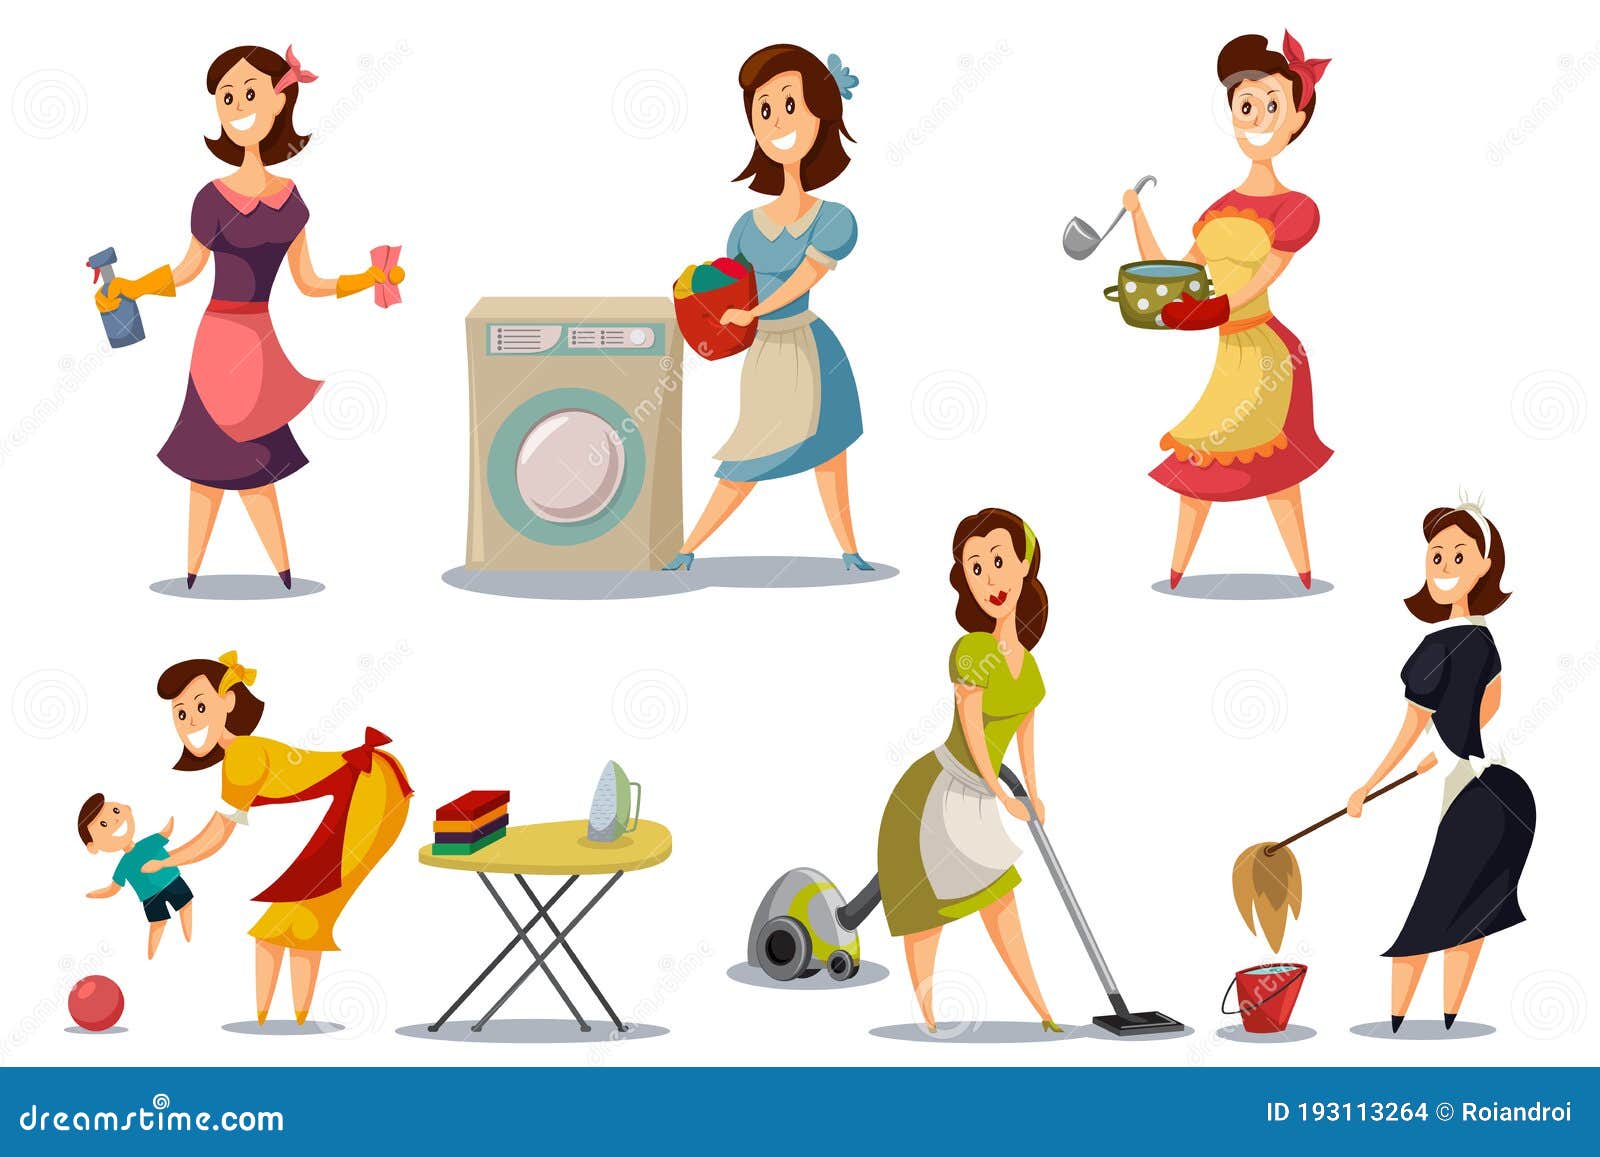 housewives at play cartoon tgp